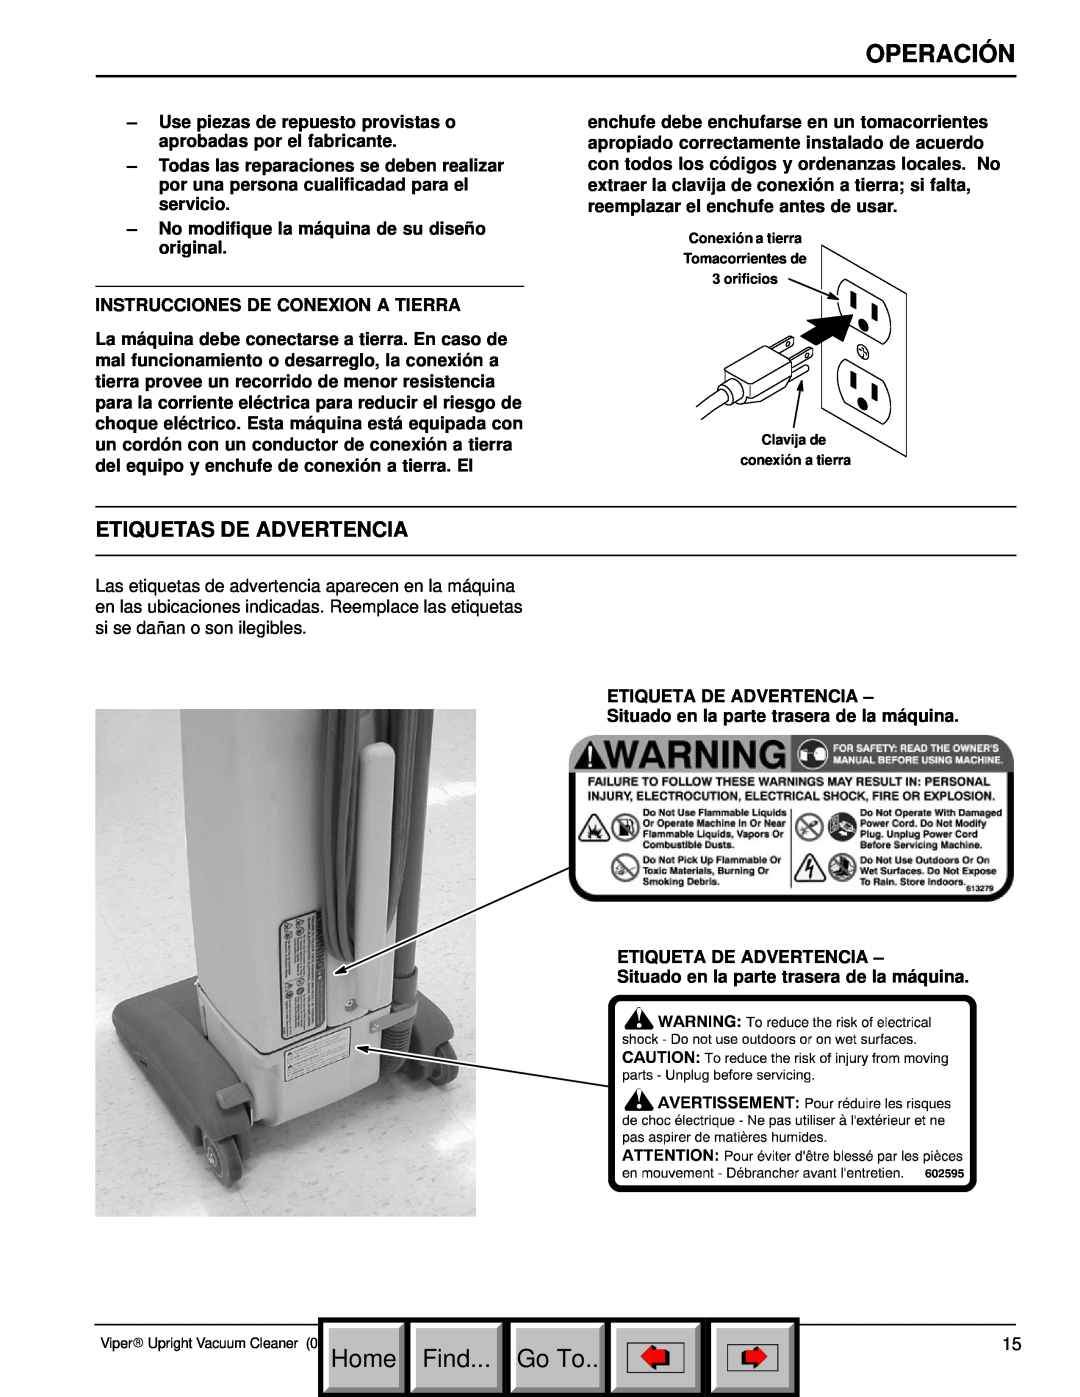 Philips 608669 manual Etiquetas De Advertencia, Operación, Home Find... Go To 